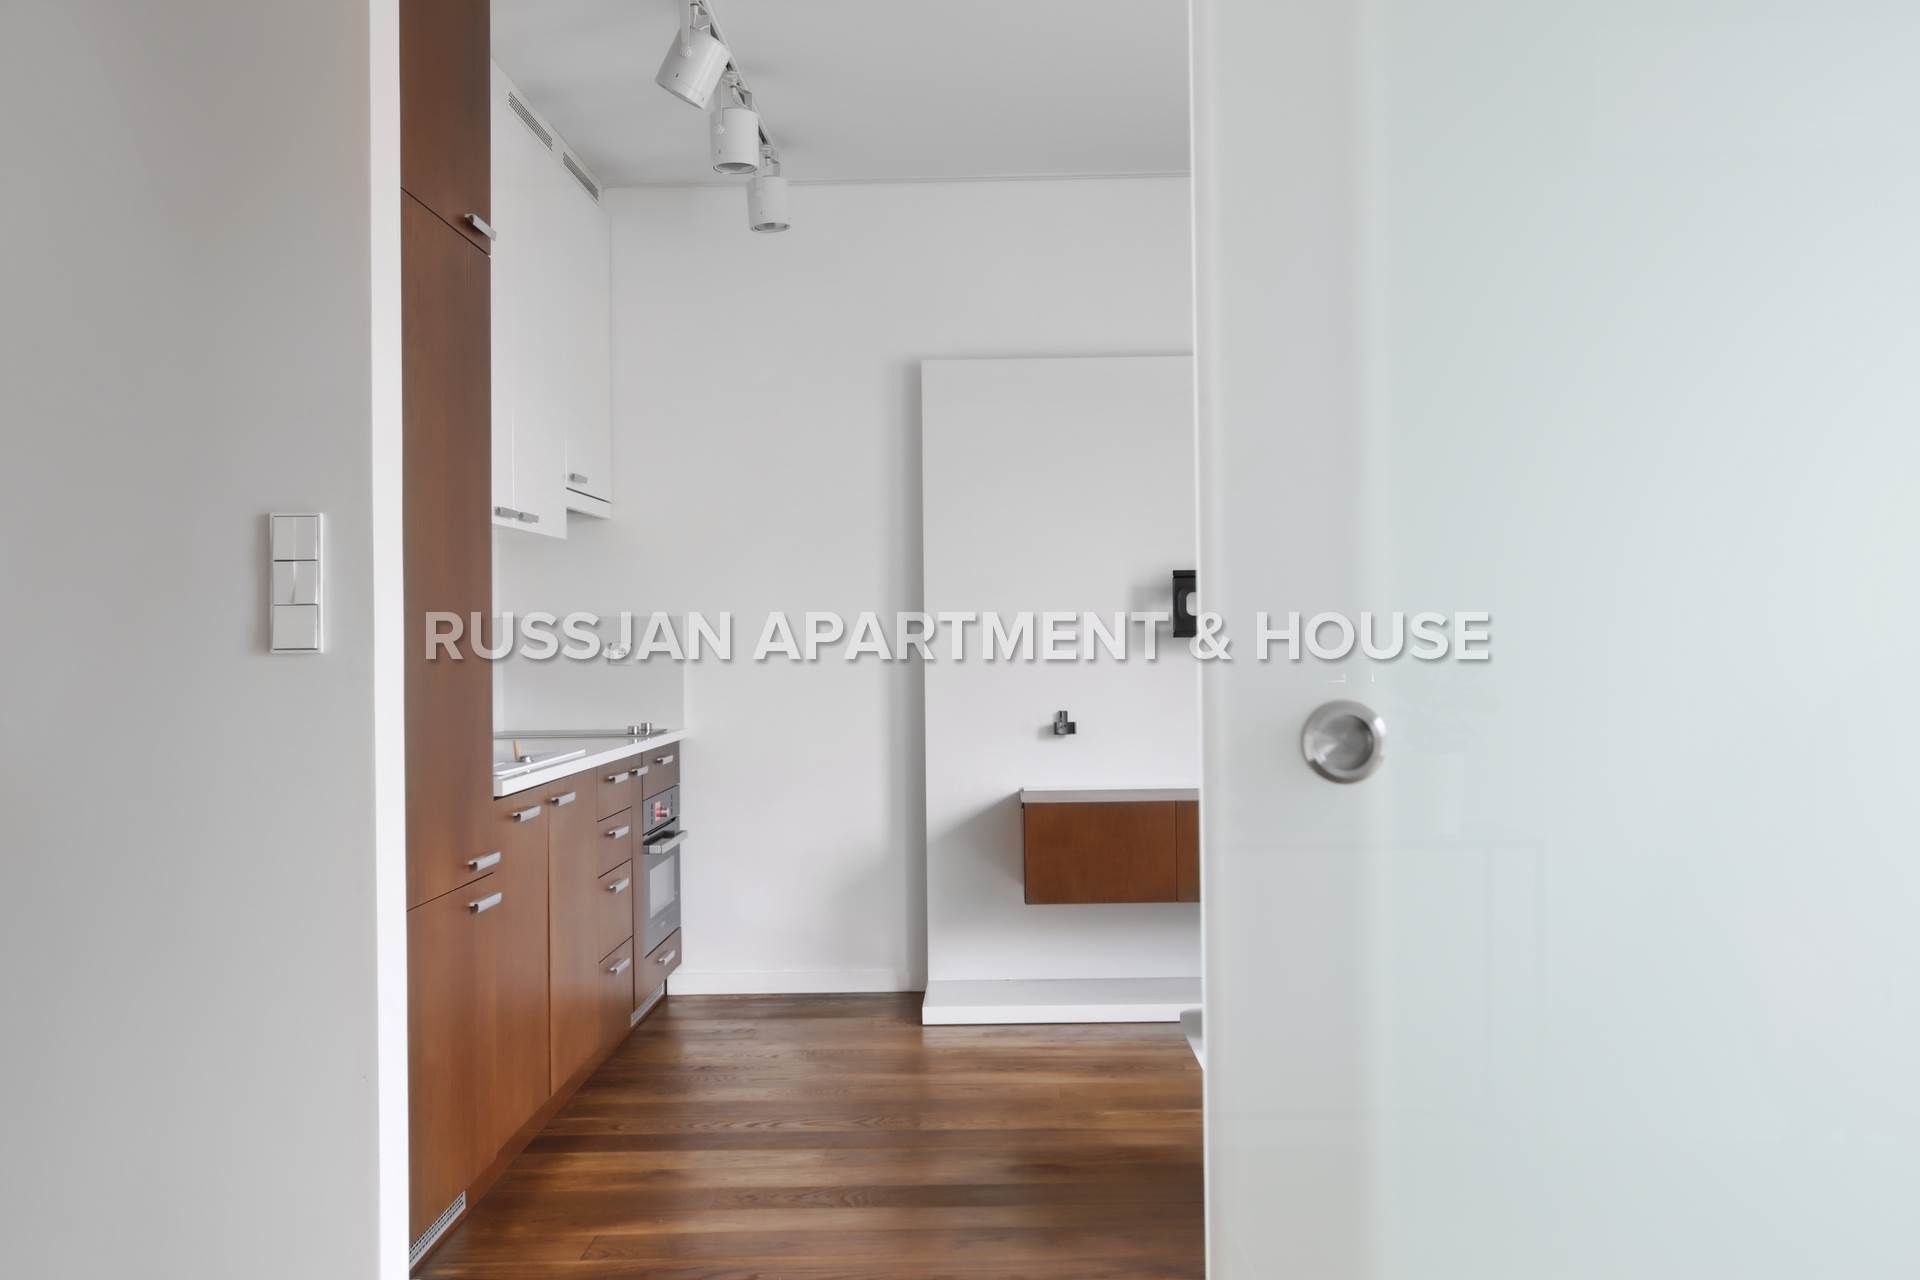 Mieszkanie Gdynia Śródmieście - Mieszkanie 112,30 m2 zaaranżowane jako dwa niezależne lokale, idealny biznes przystosowany do wynajmu lub bardzo wygodna przestrzeń dla rodziny. - Russjan